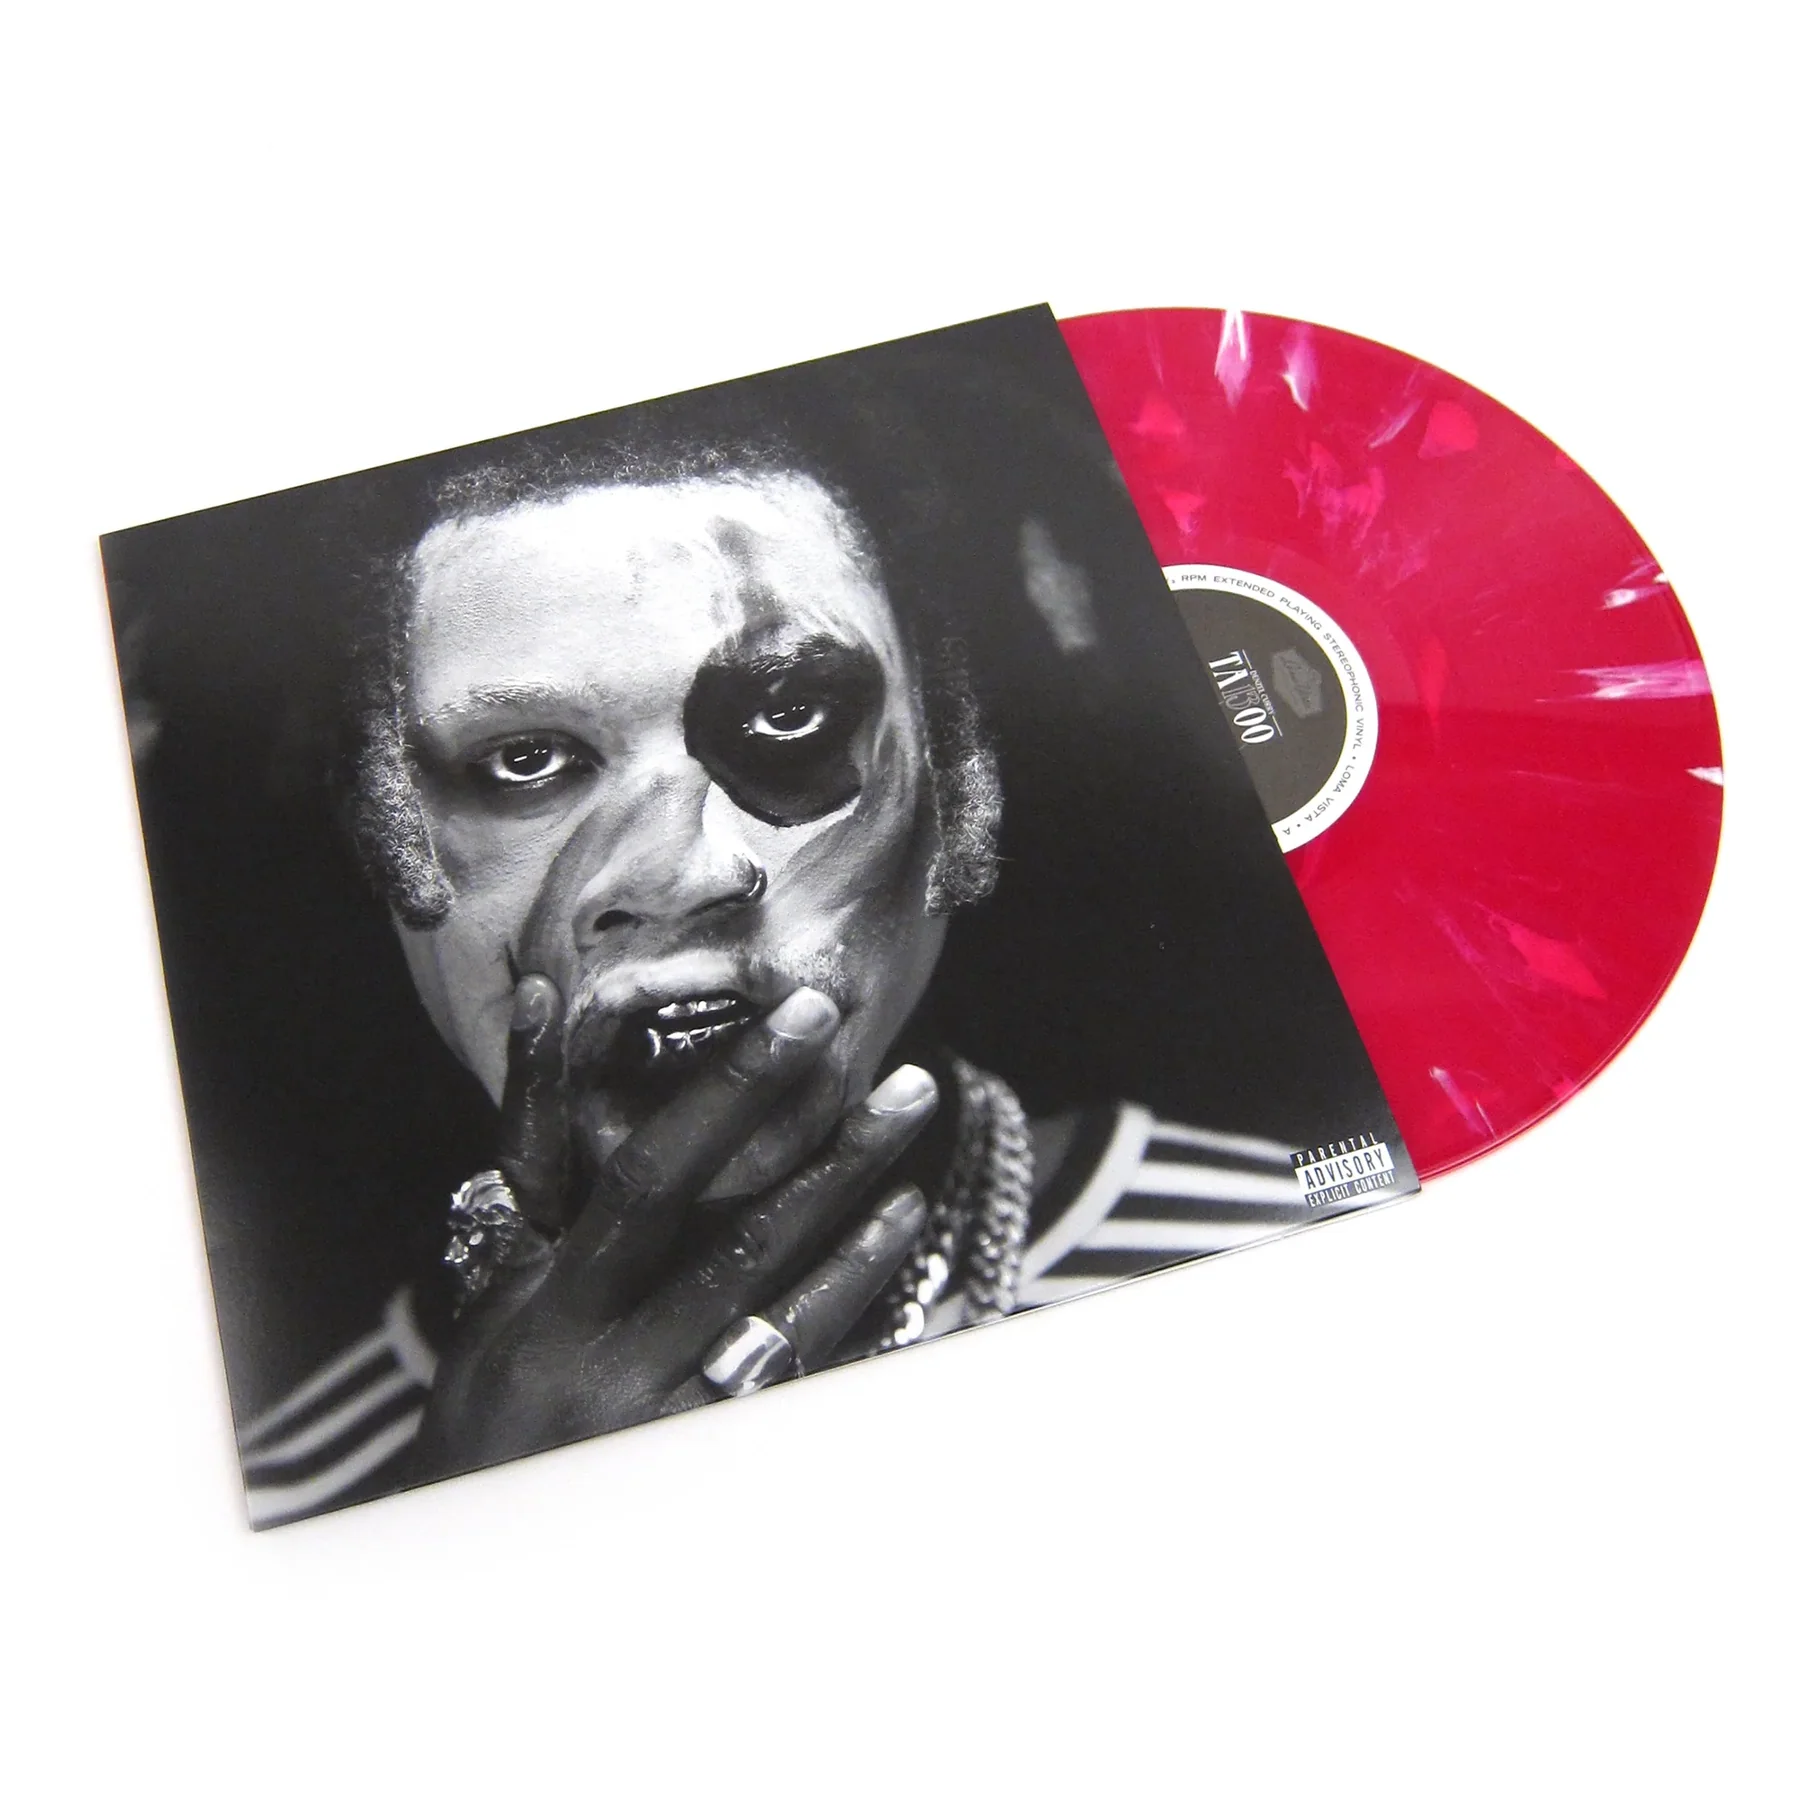 Denzel Curry - TA13OO (Red Slushie Vinyl)